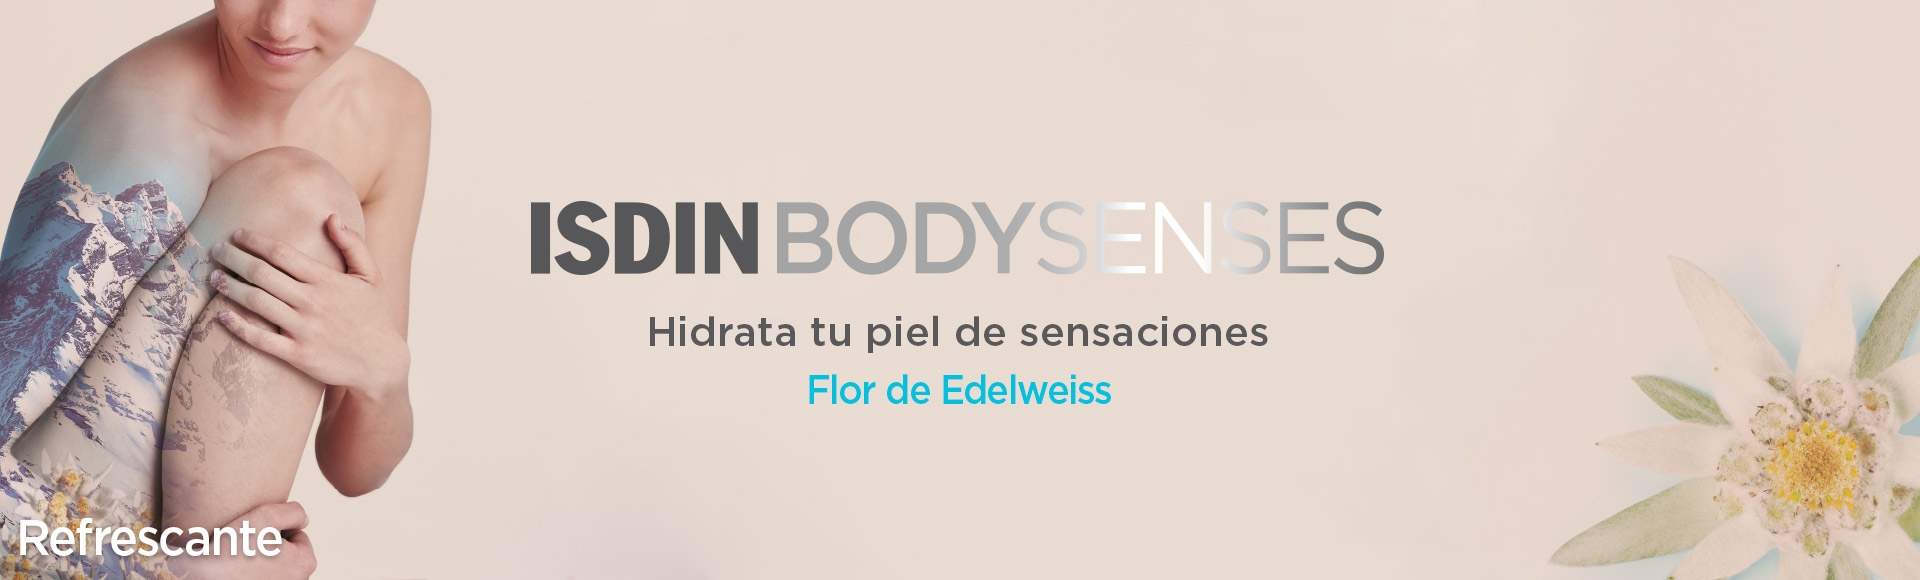 Isdin BodySenses refrescante Flor de Edelweiss productos en Farma2go